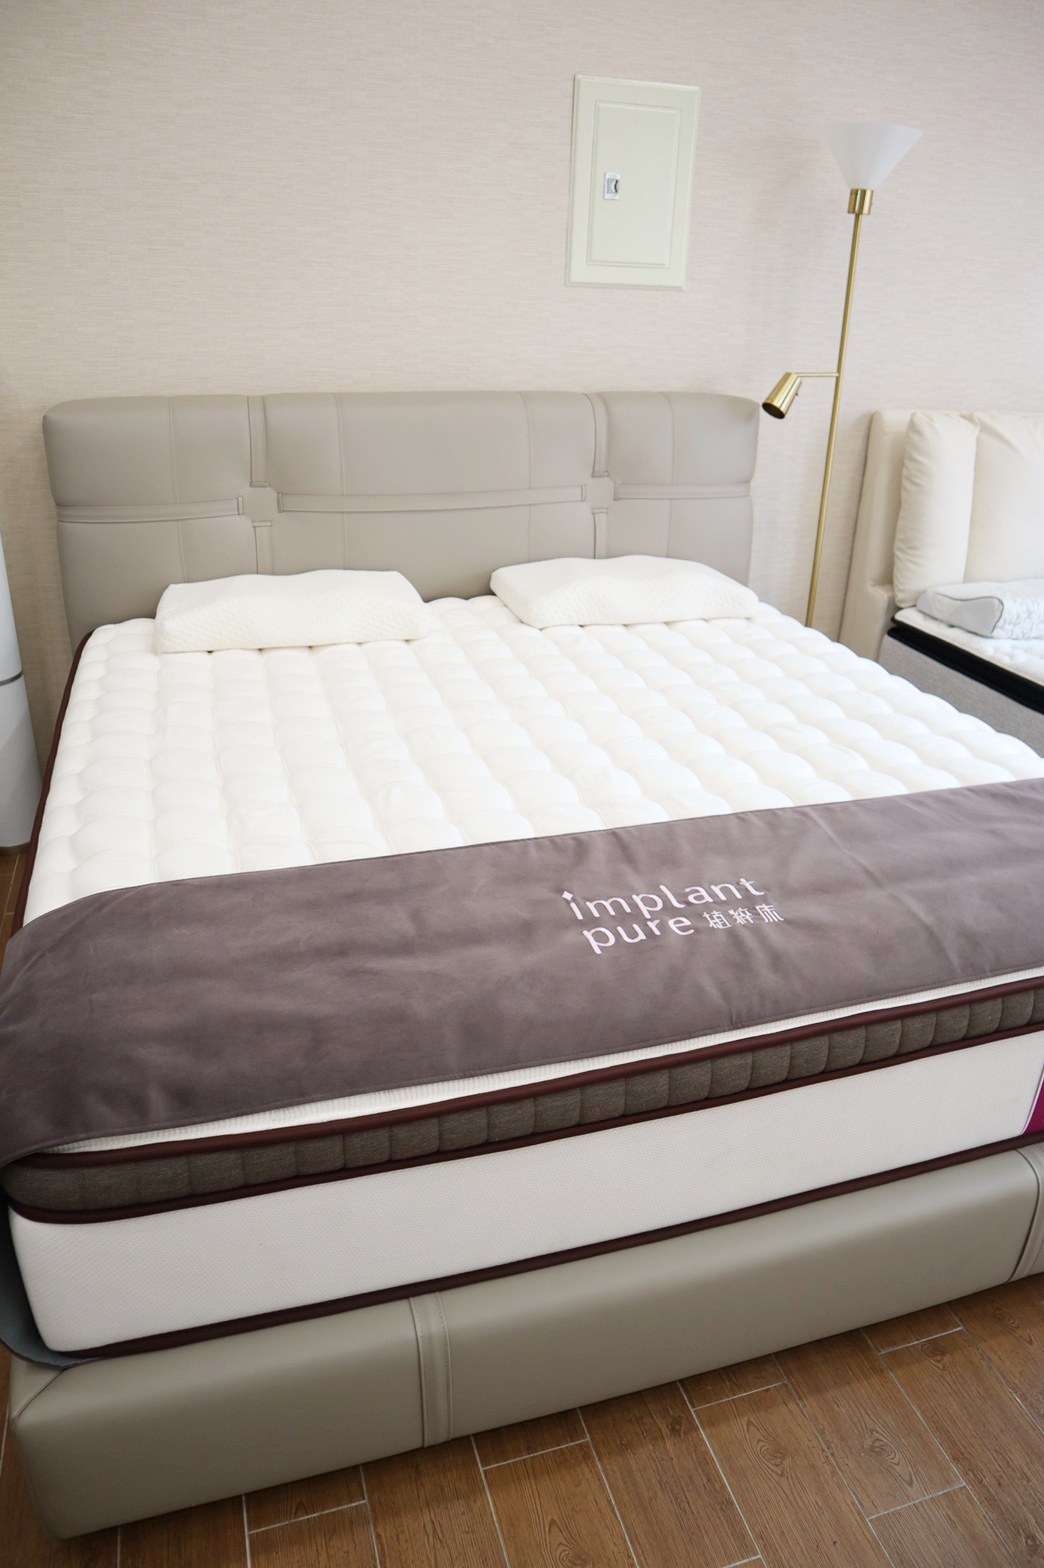 『高雄床墊推薦』植粹床工廠直營把最熱門的床墊，直接在門市供你試躺到滿意為止！